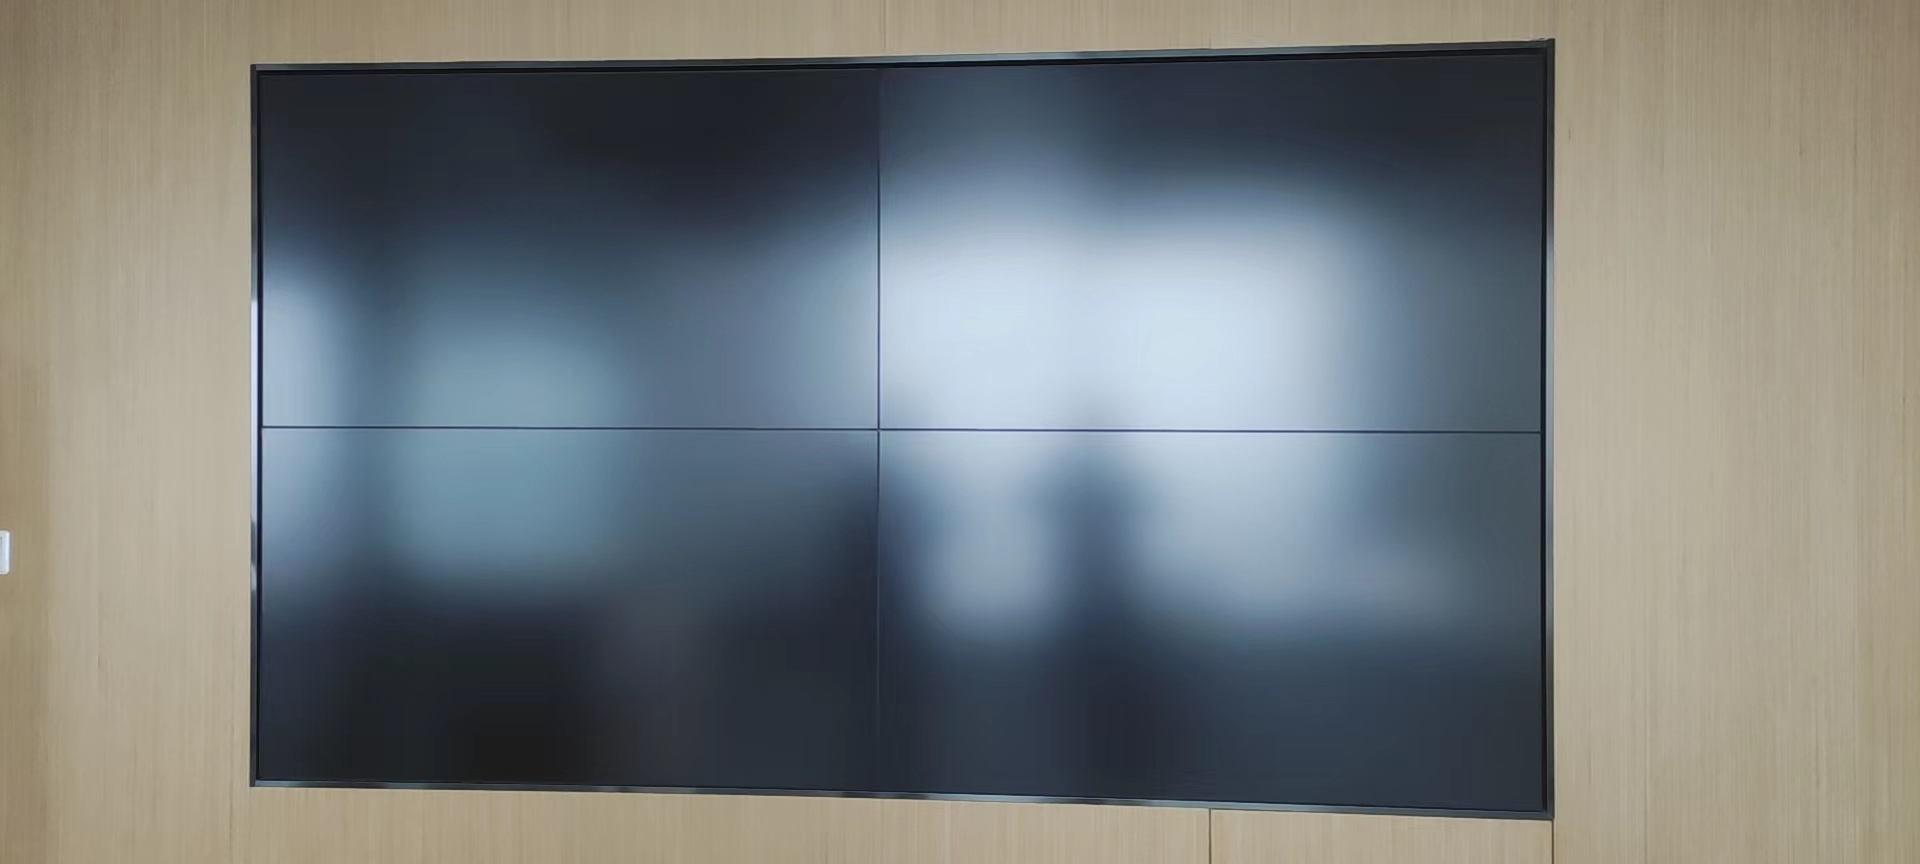 南京多媒体液晶拼接屏大屏幕电视墙显示器 小间距LCD液晶屏厂家图片